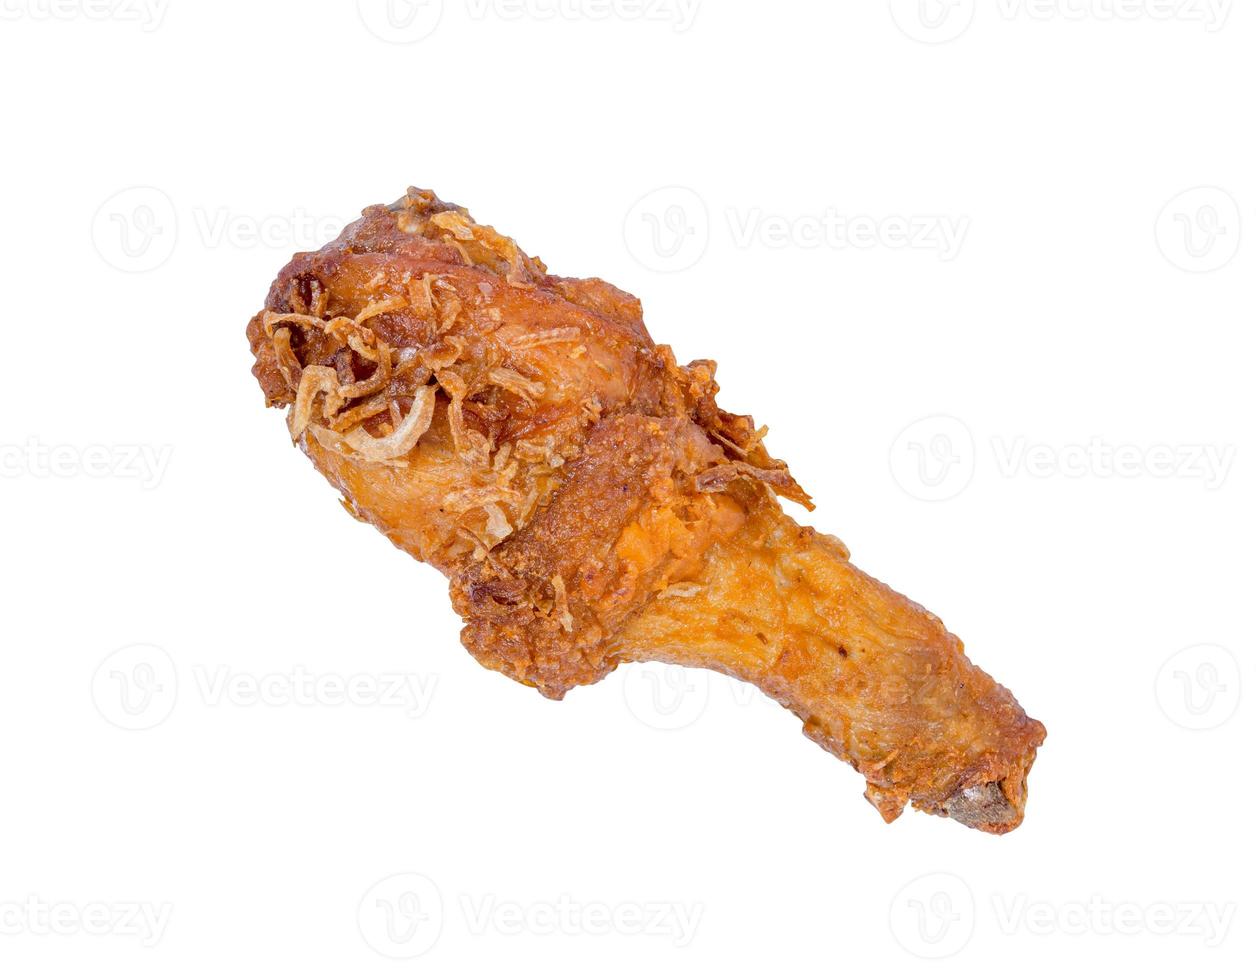 coxinha de frango frito isolada no fundo branco, traçado de recorte foto